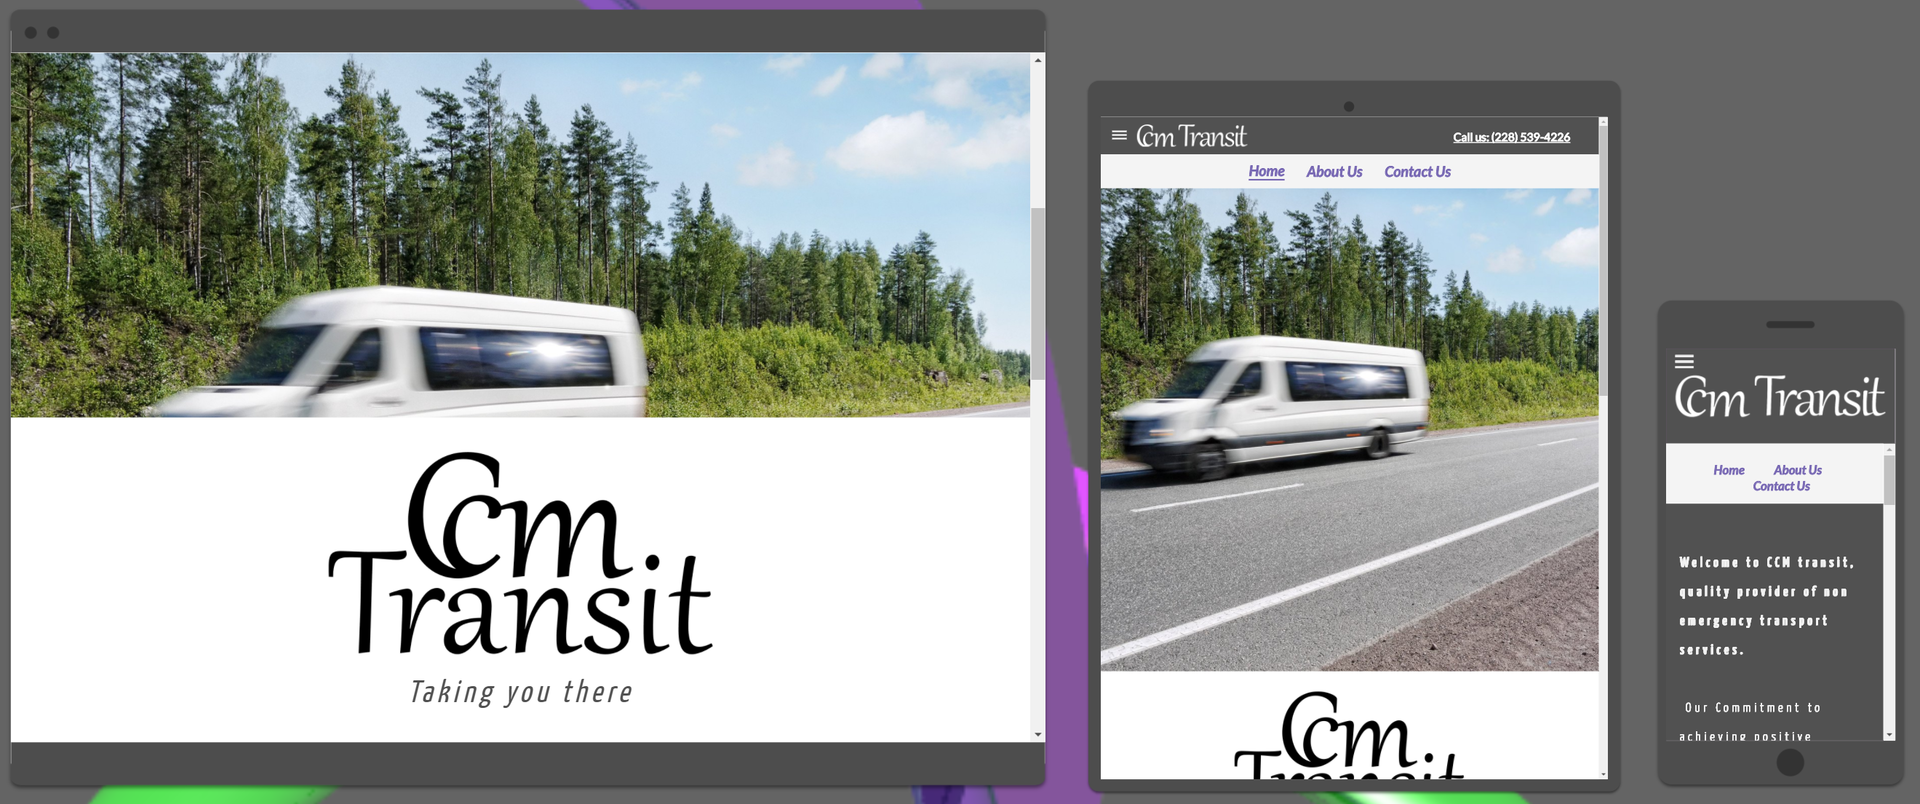 CCM Transit Website Sample